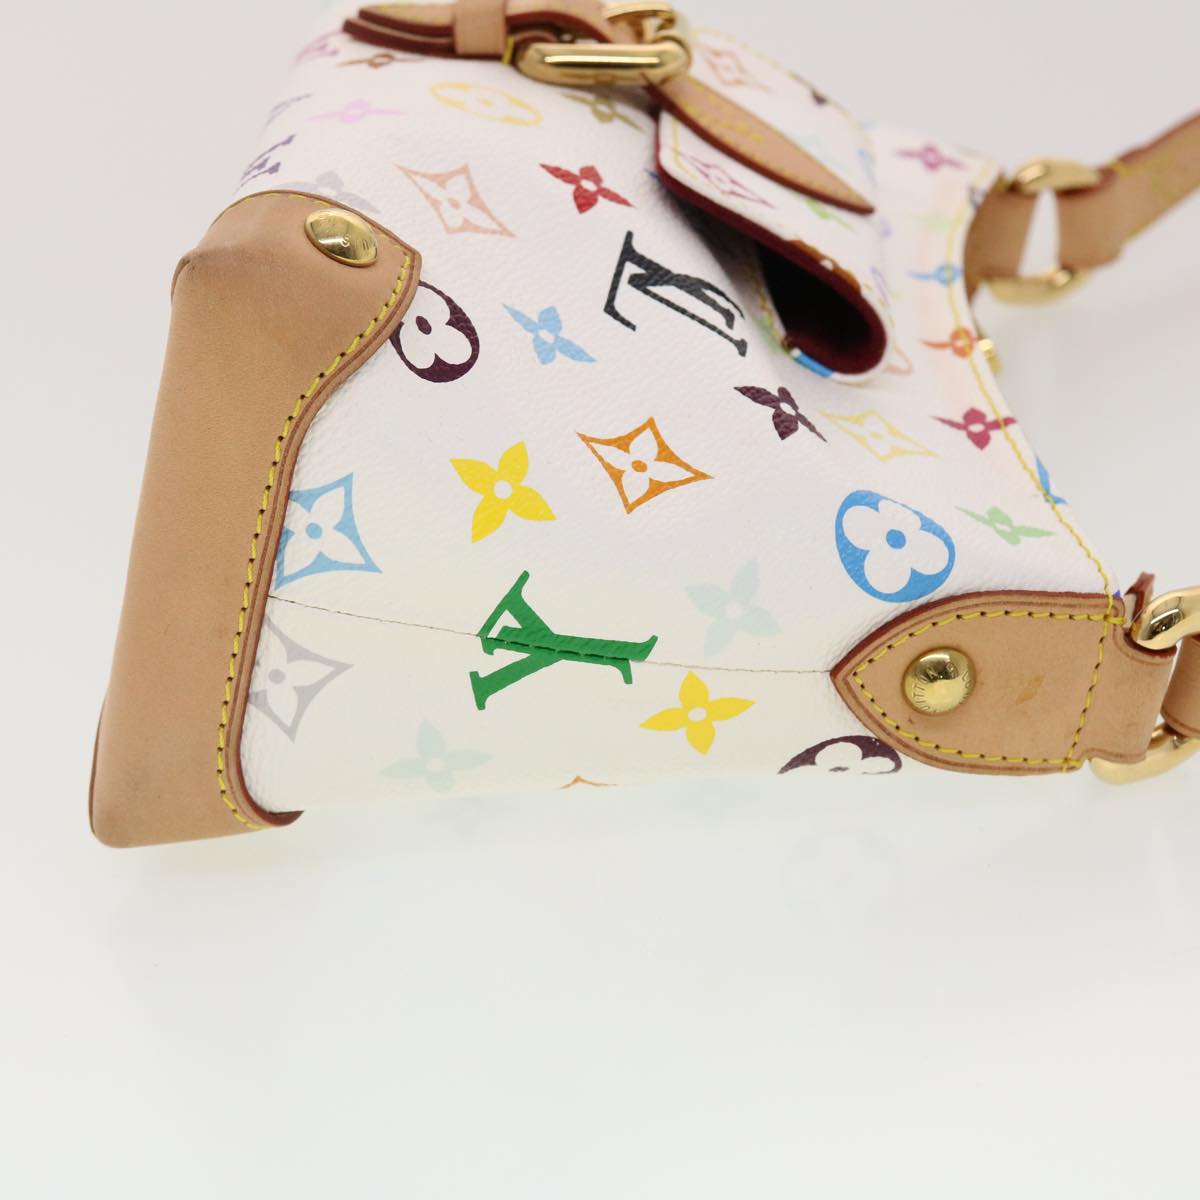 LOUIS VUITTON Monogram Multicolor Eliza Shoulder Bag White M40098